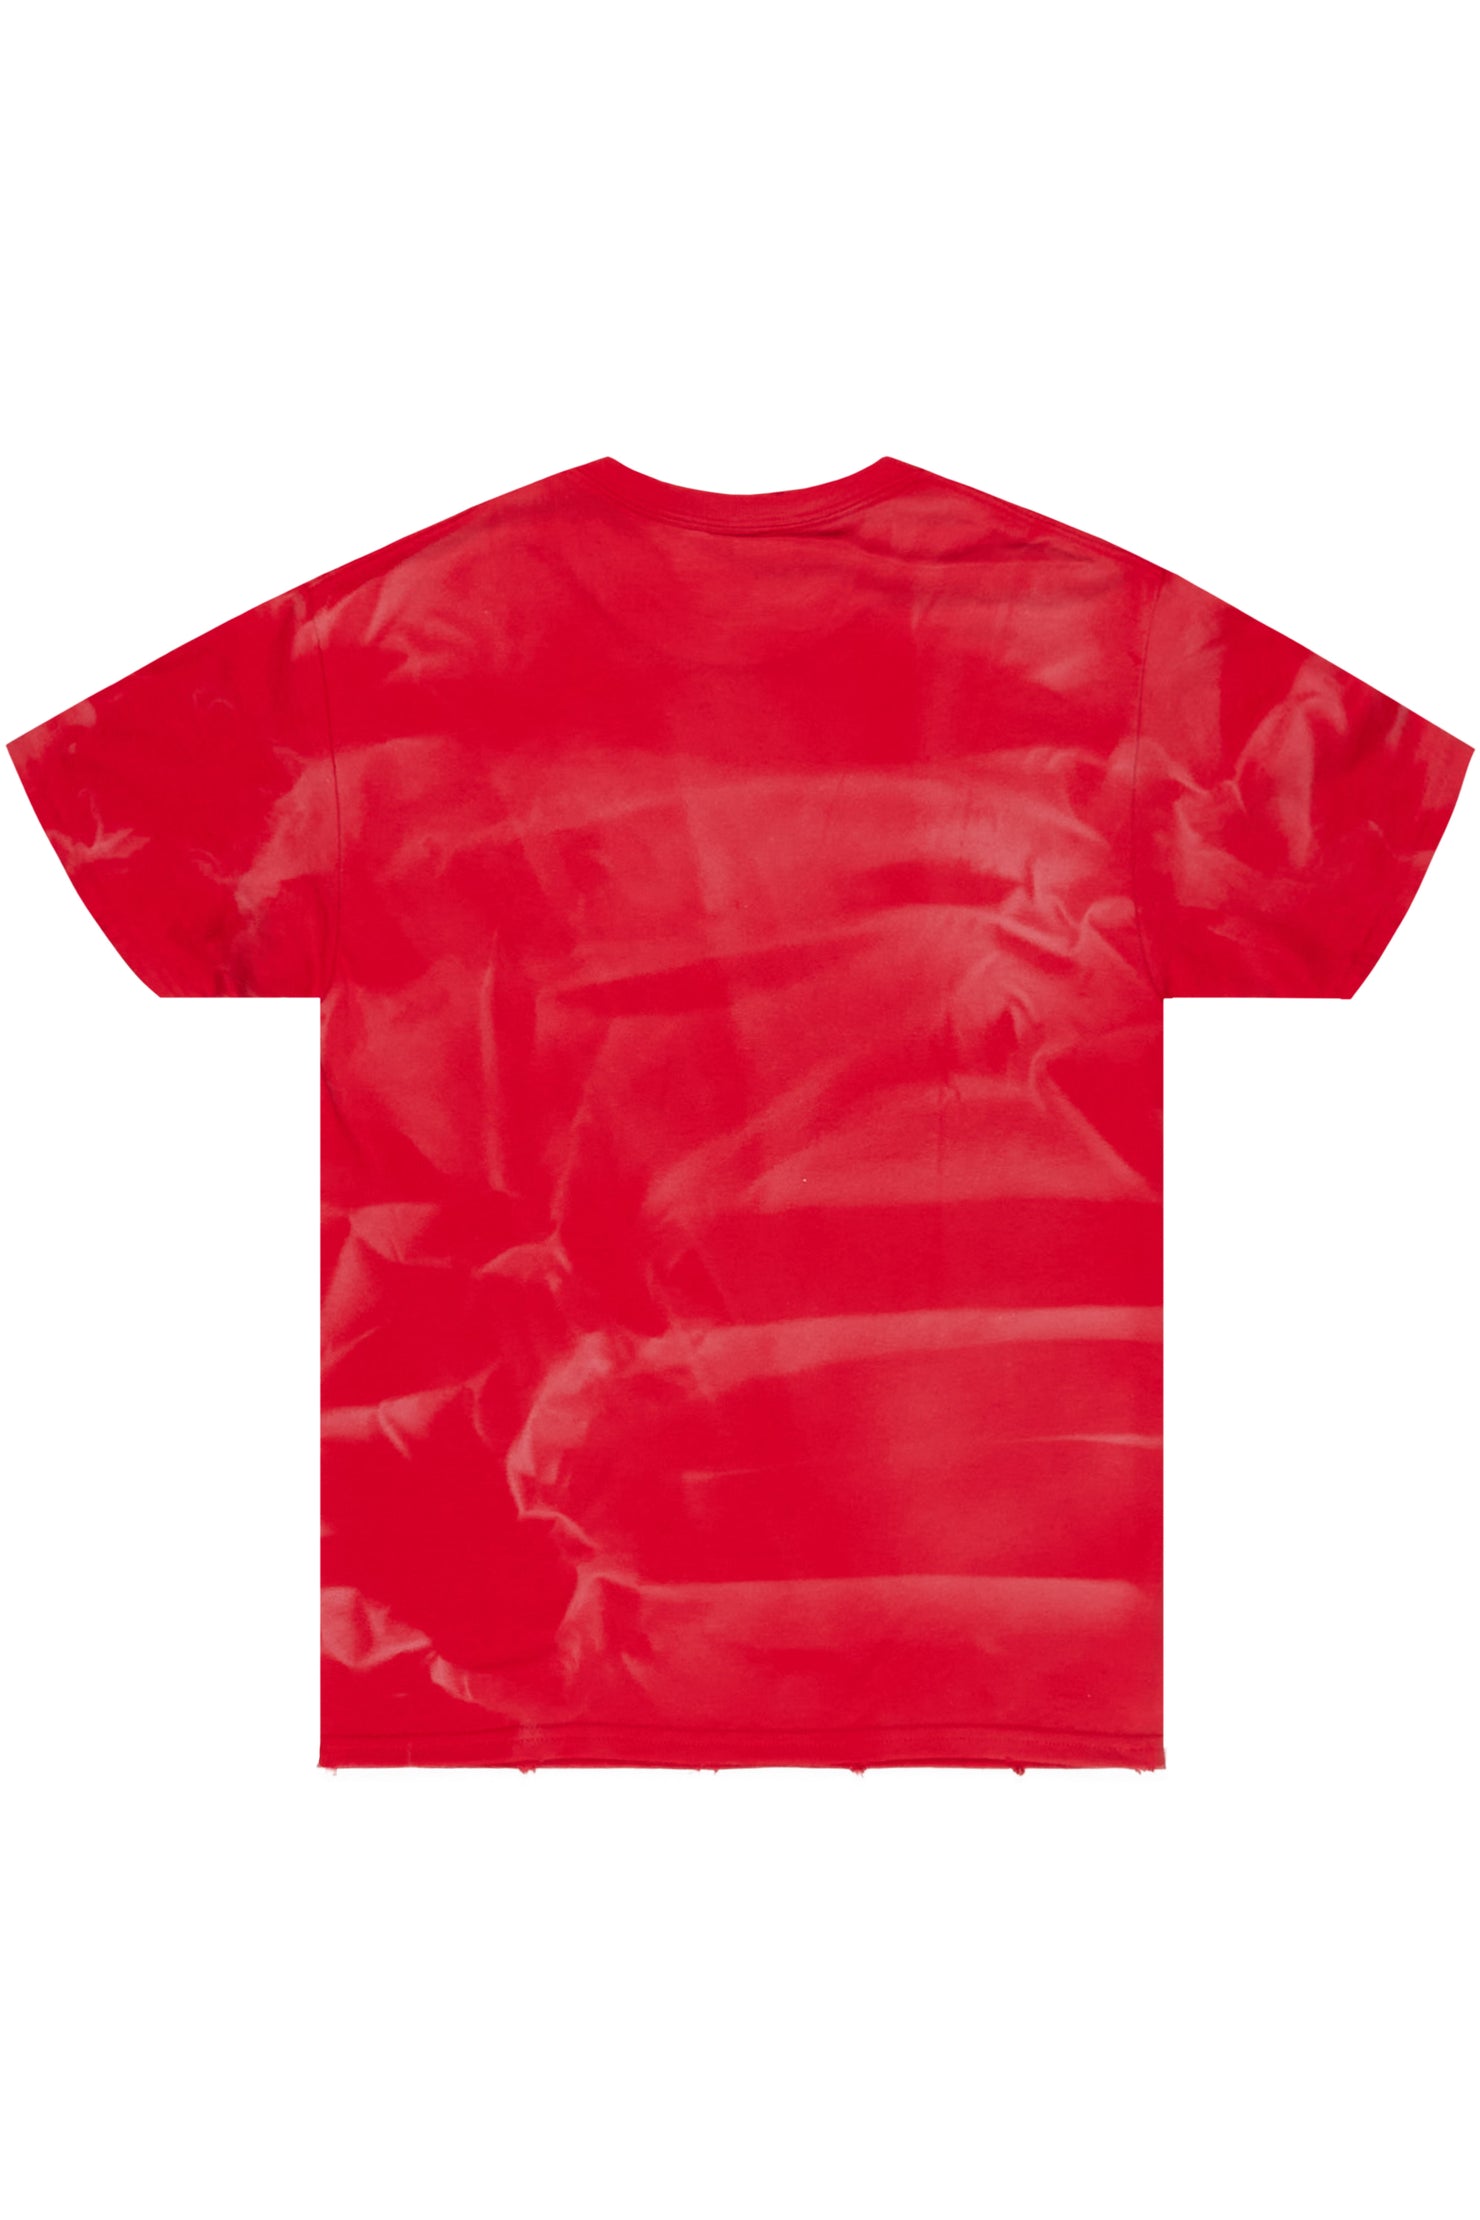 Zustrand Red Graphic T-Shirt